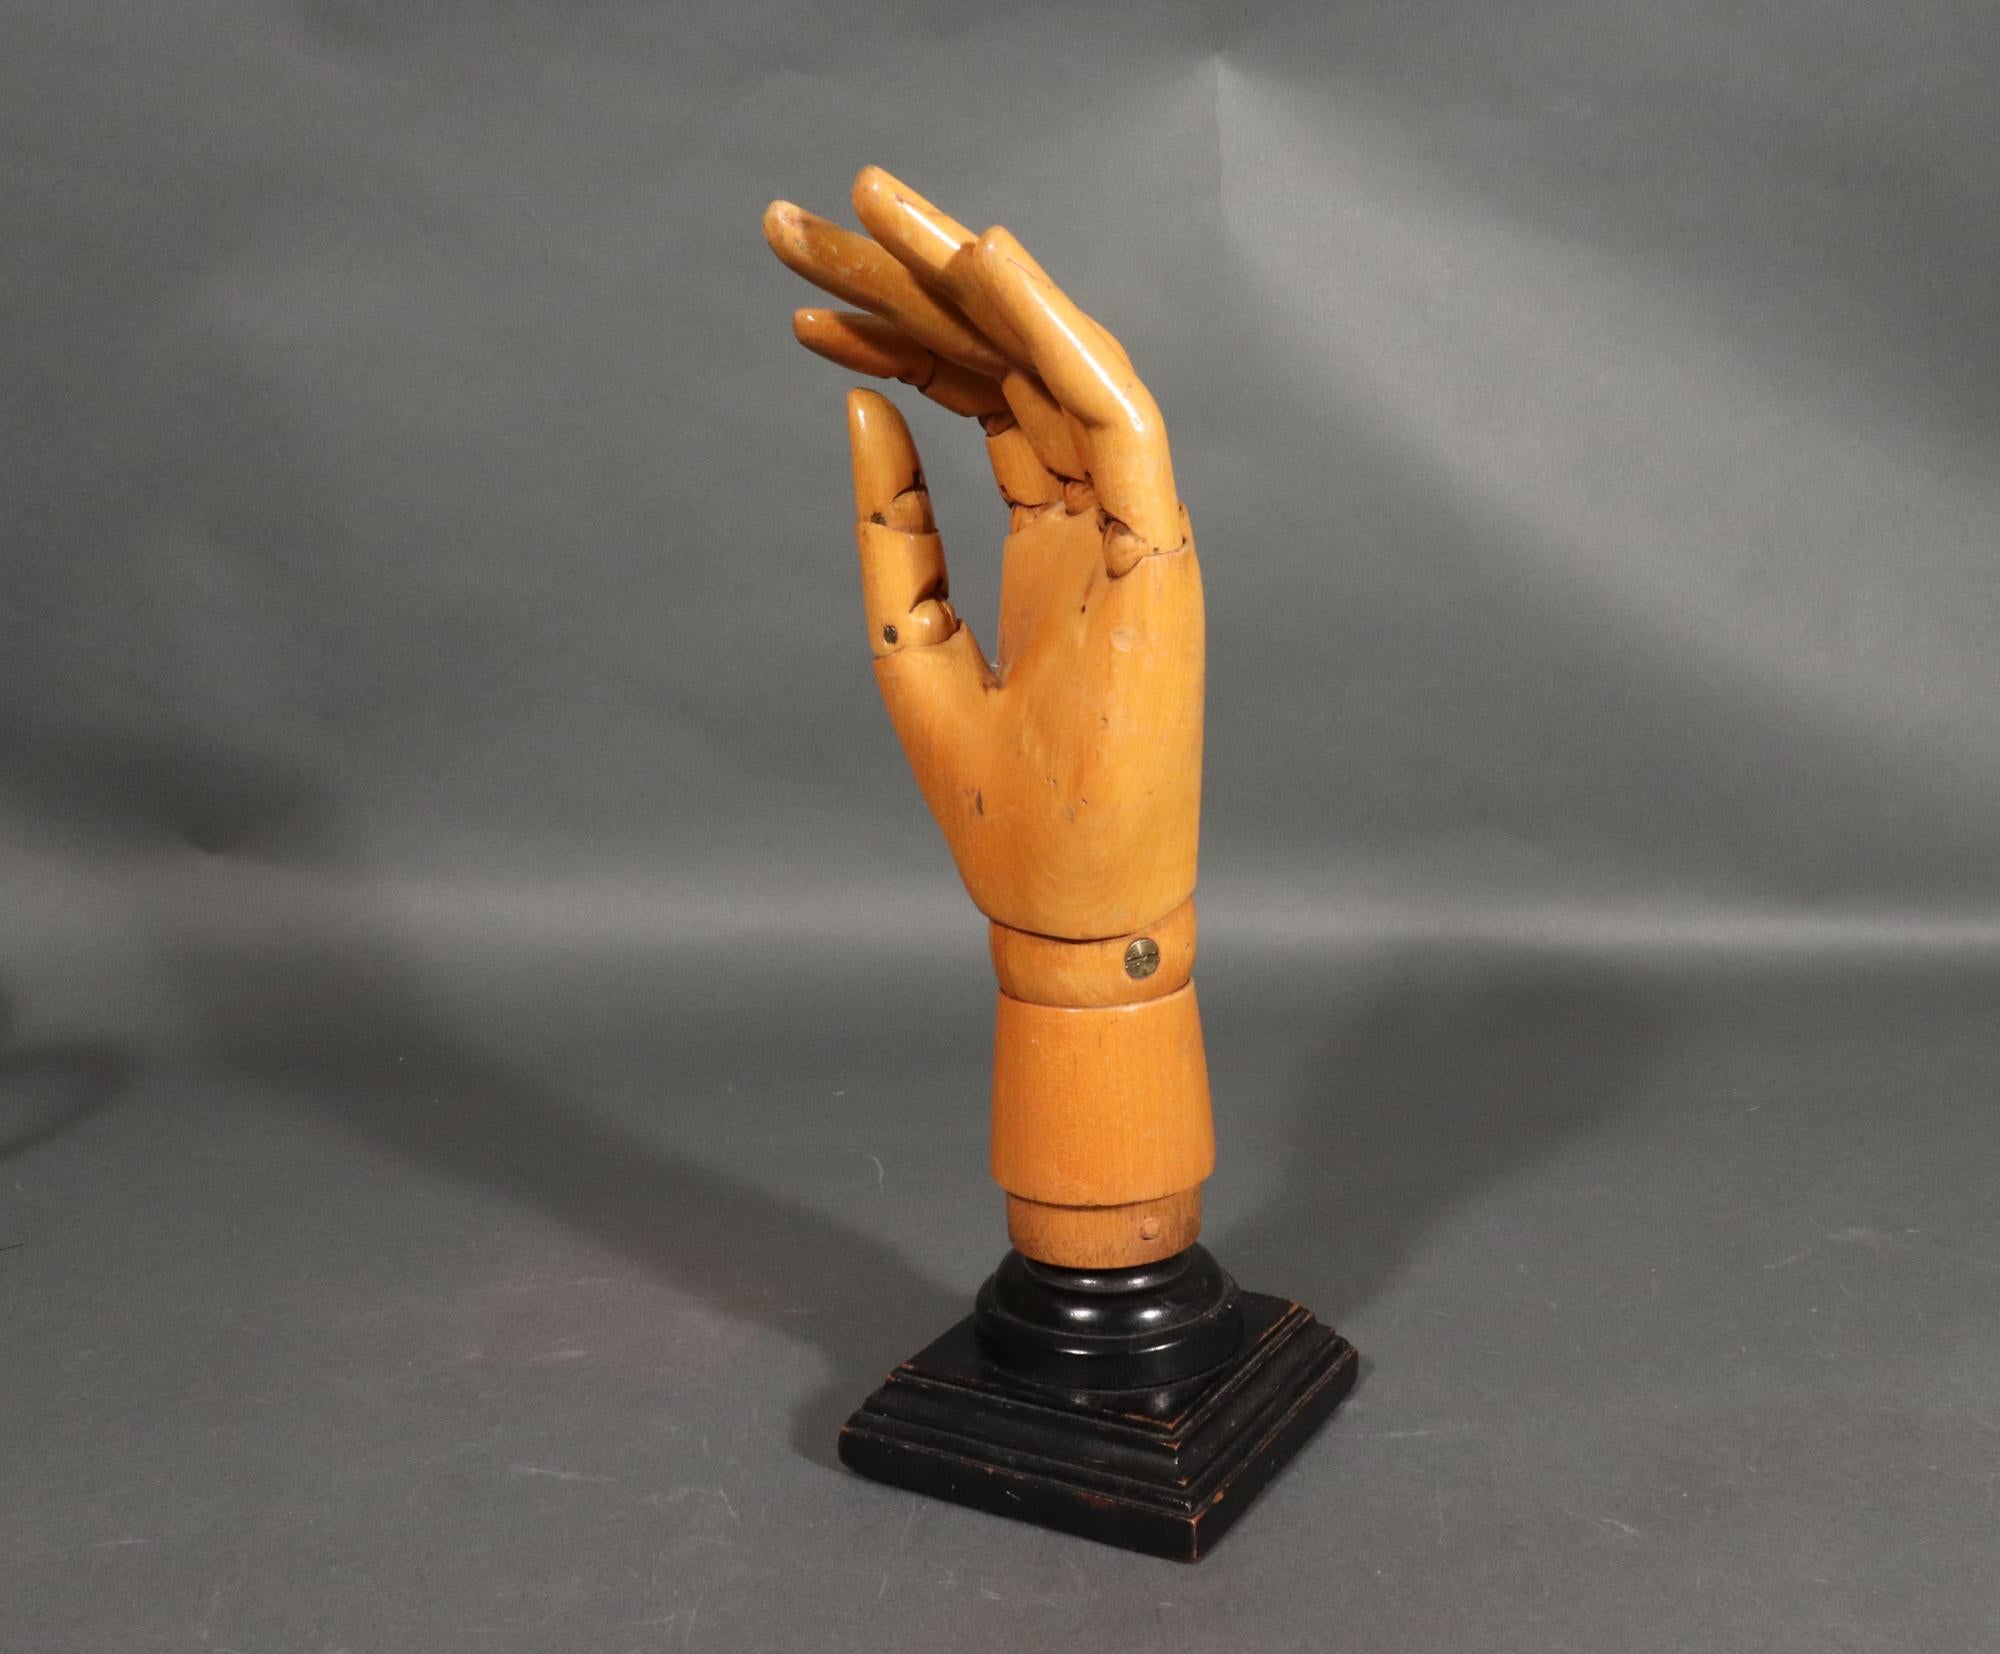 Gelenkiges Holz-Künstler-Handmodell,
1950s-1970

Die wunderschön geschnitzte Hand aus hellem Holz ist am Handgelenk und an der Basis jedes Fingers gegliedert, während Zeigefinger und Daumen ebenfalls am Knöchel gegliedert sind und die anderen Finger